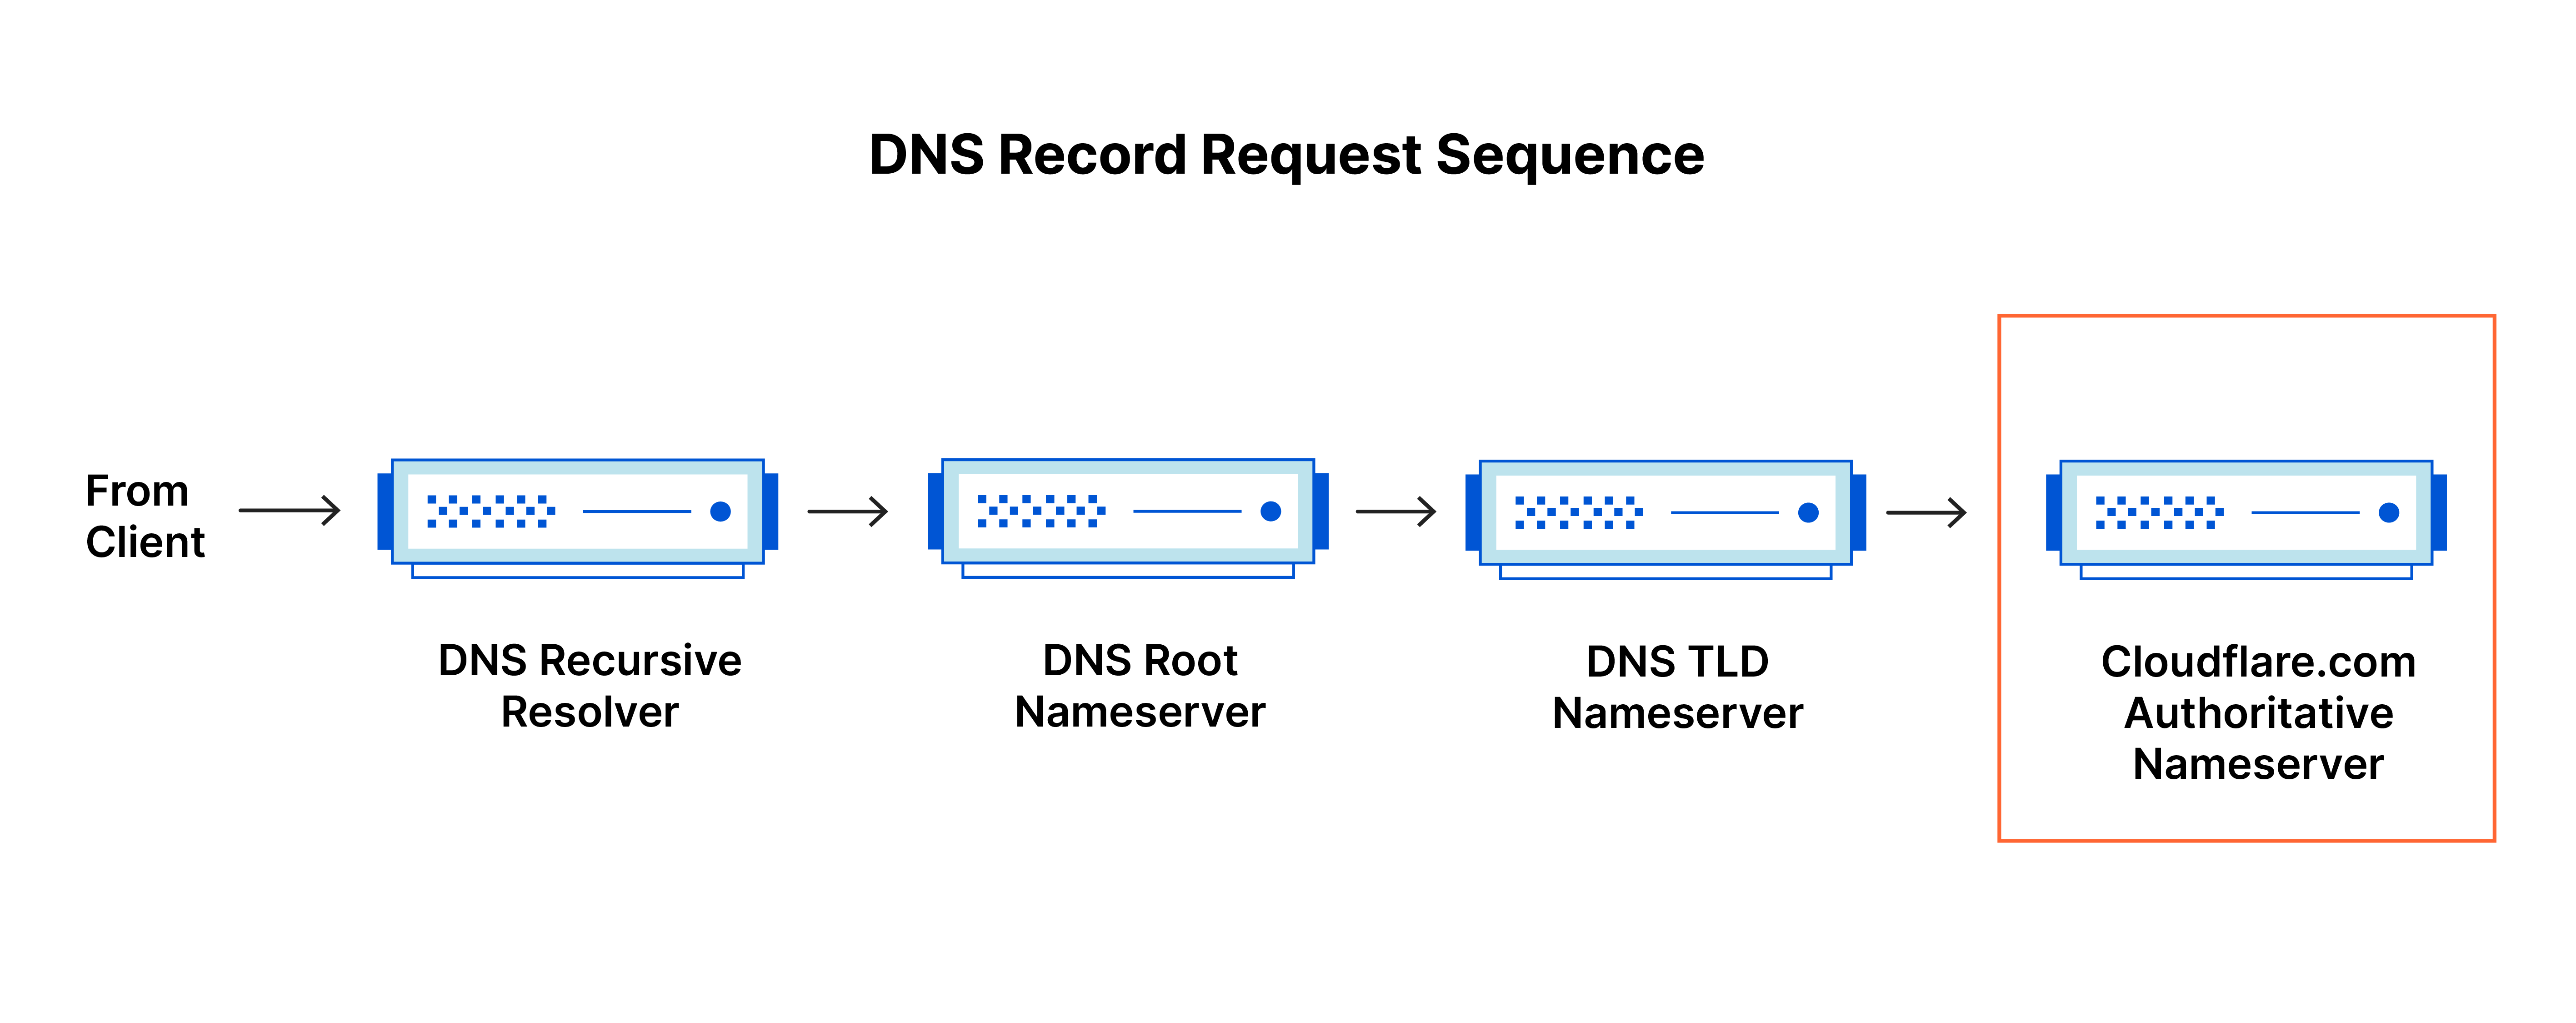 Sequenz der DNS-Eintragsanfragen – DNS-Anfrage erreicht autoritativen Nameserver für cloudflare.com